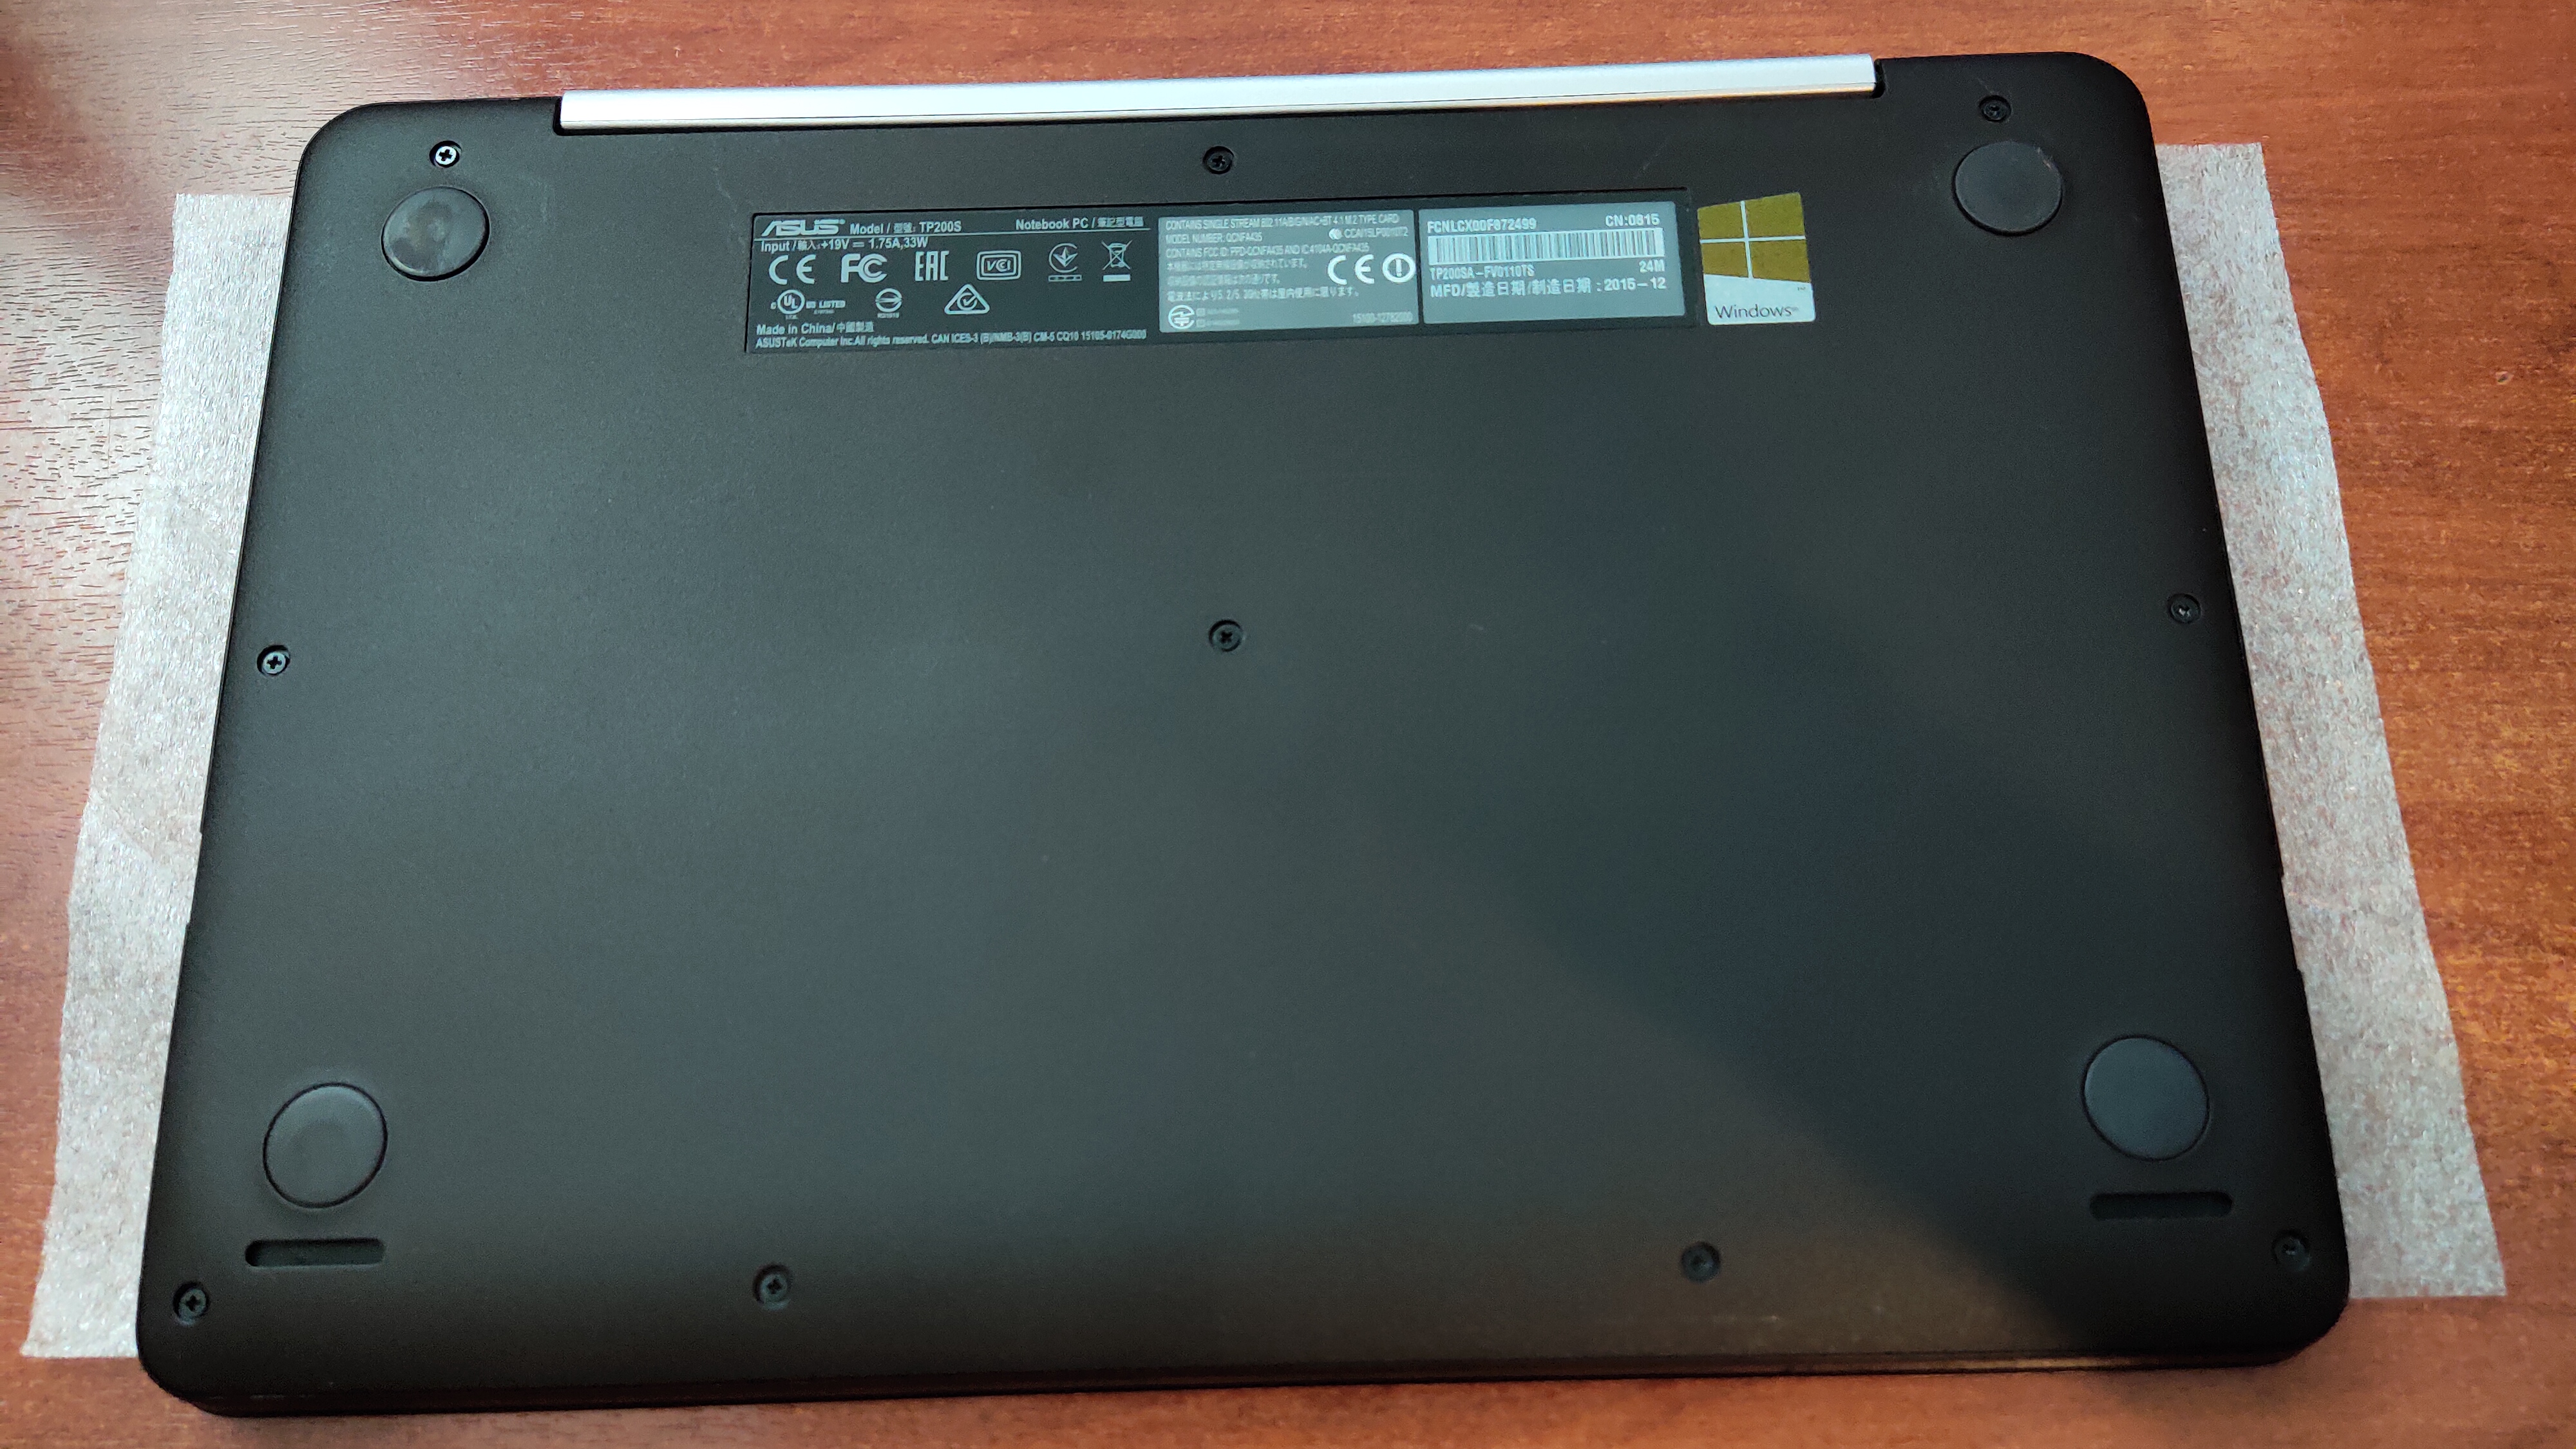 Satıldı ASUS Notebook TP200SA Intel N3050 2GB 32GB SSD Sıfır Temizlikte 